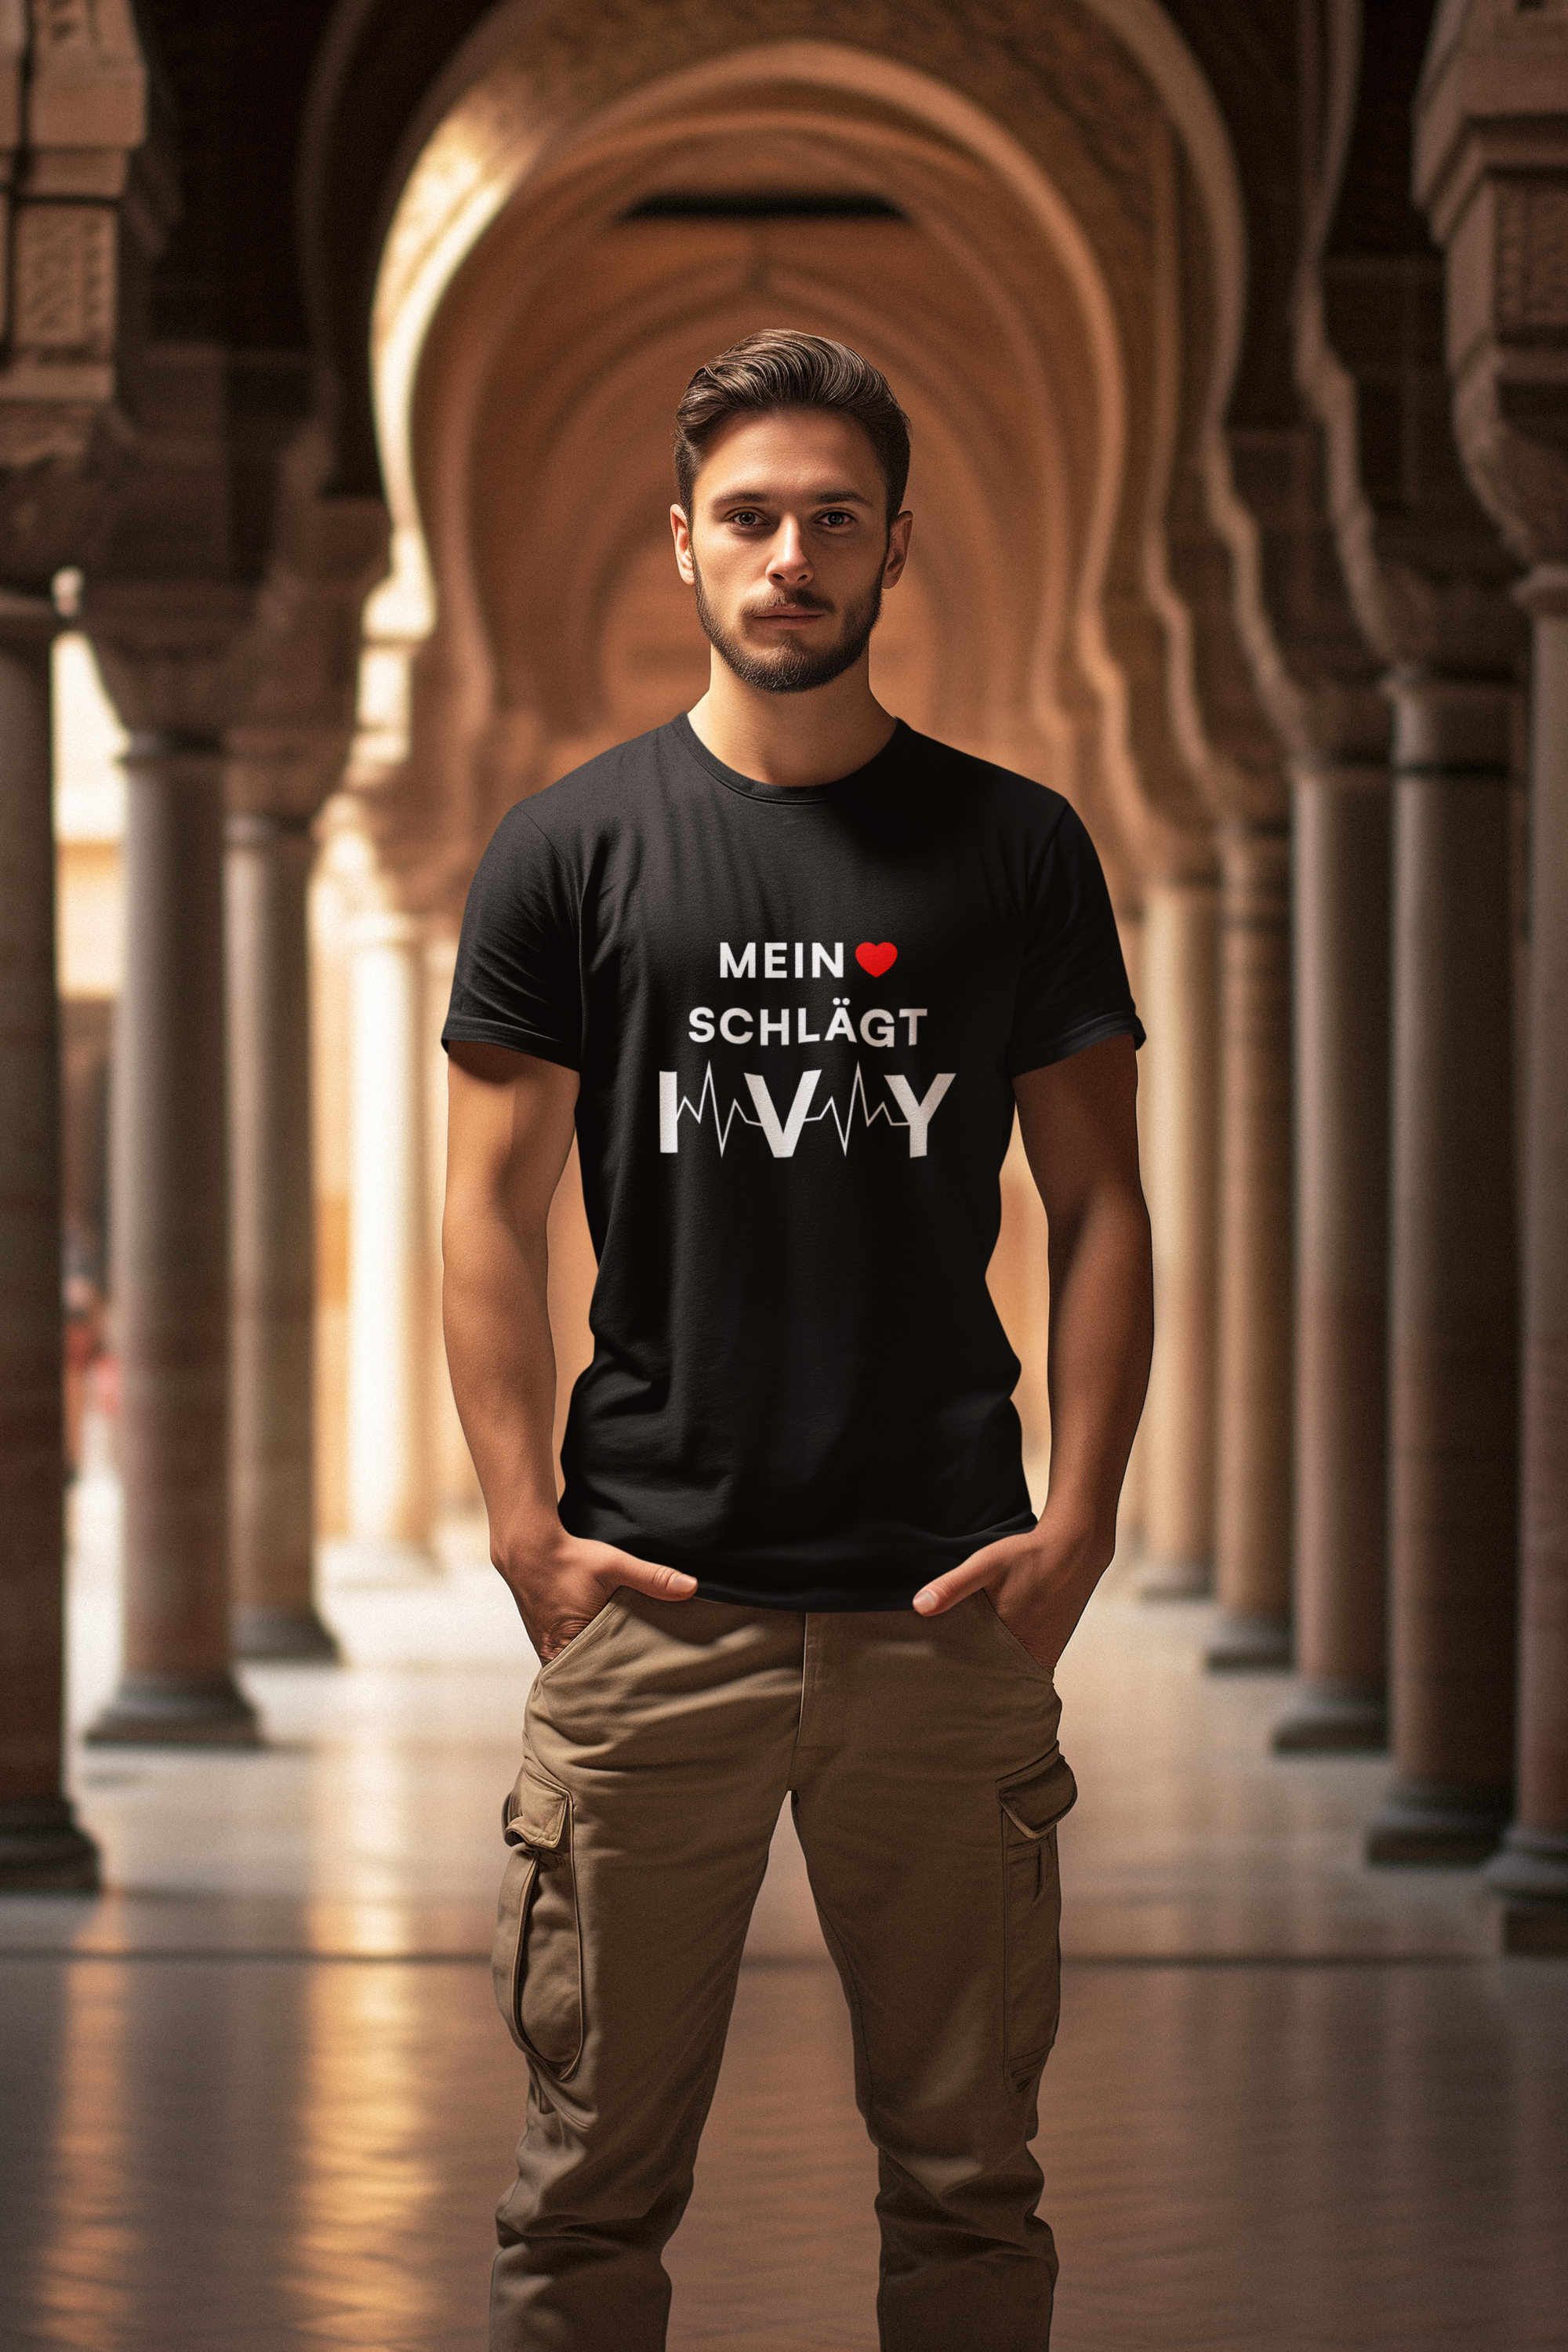 Mein Herz schlägt IVY - Shirt Man